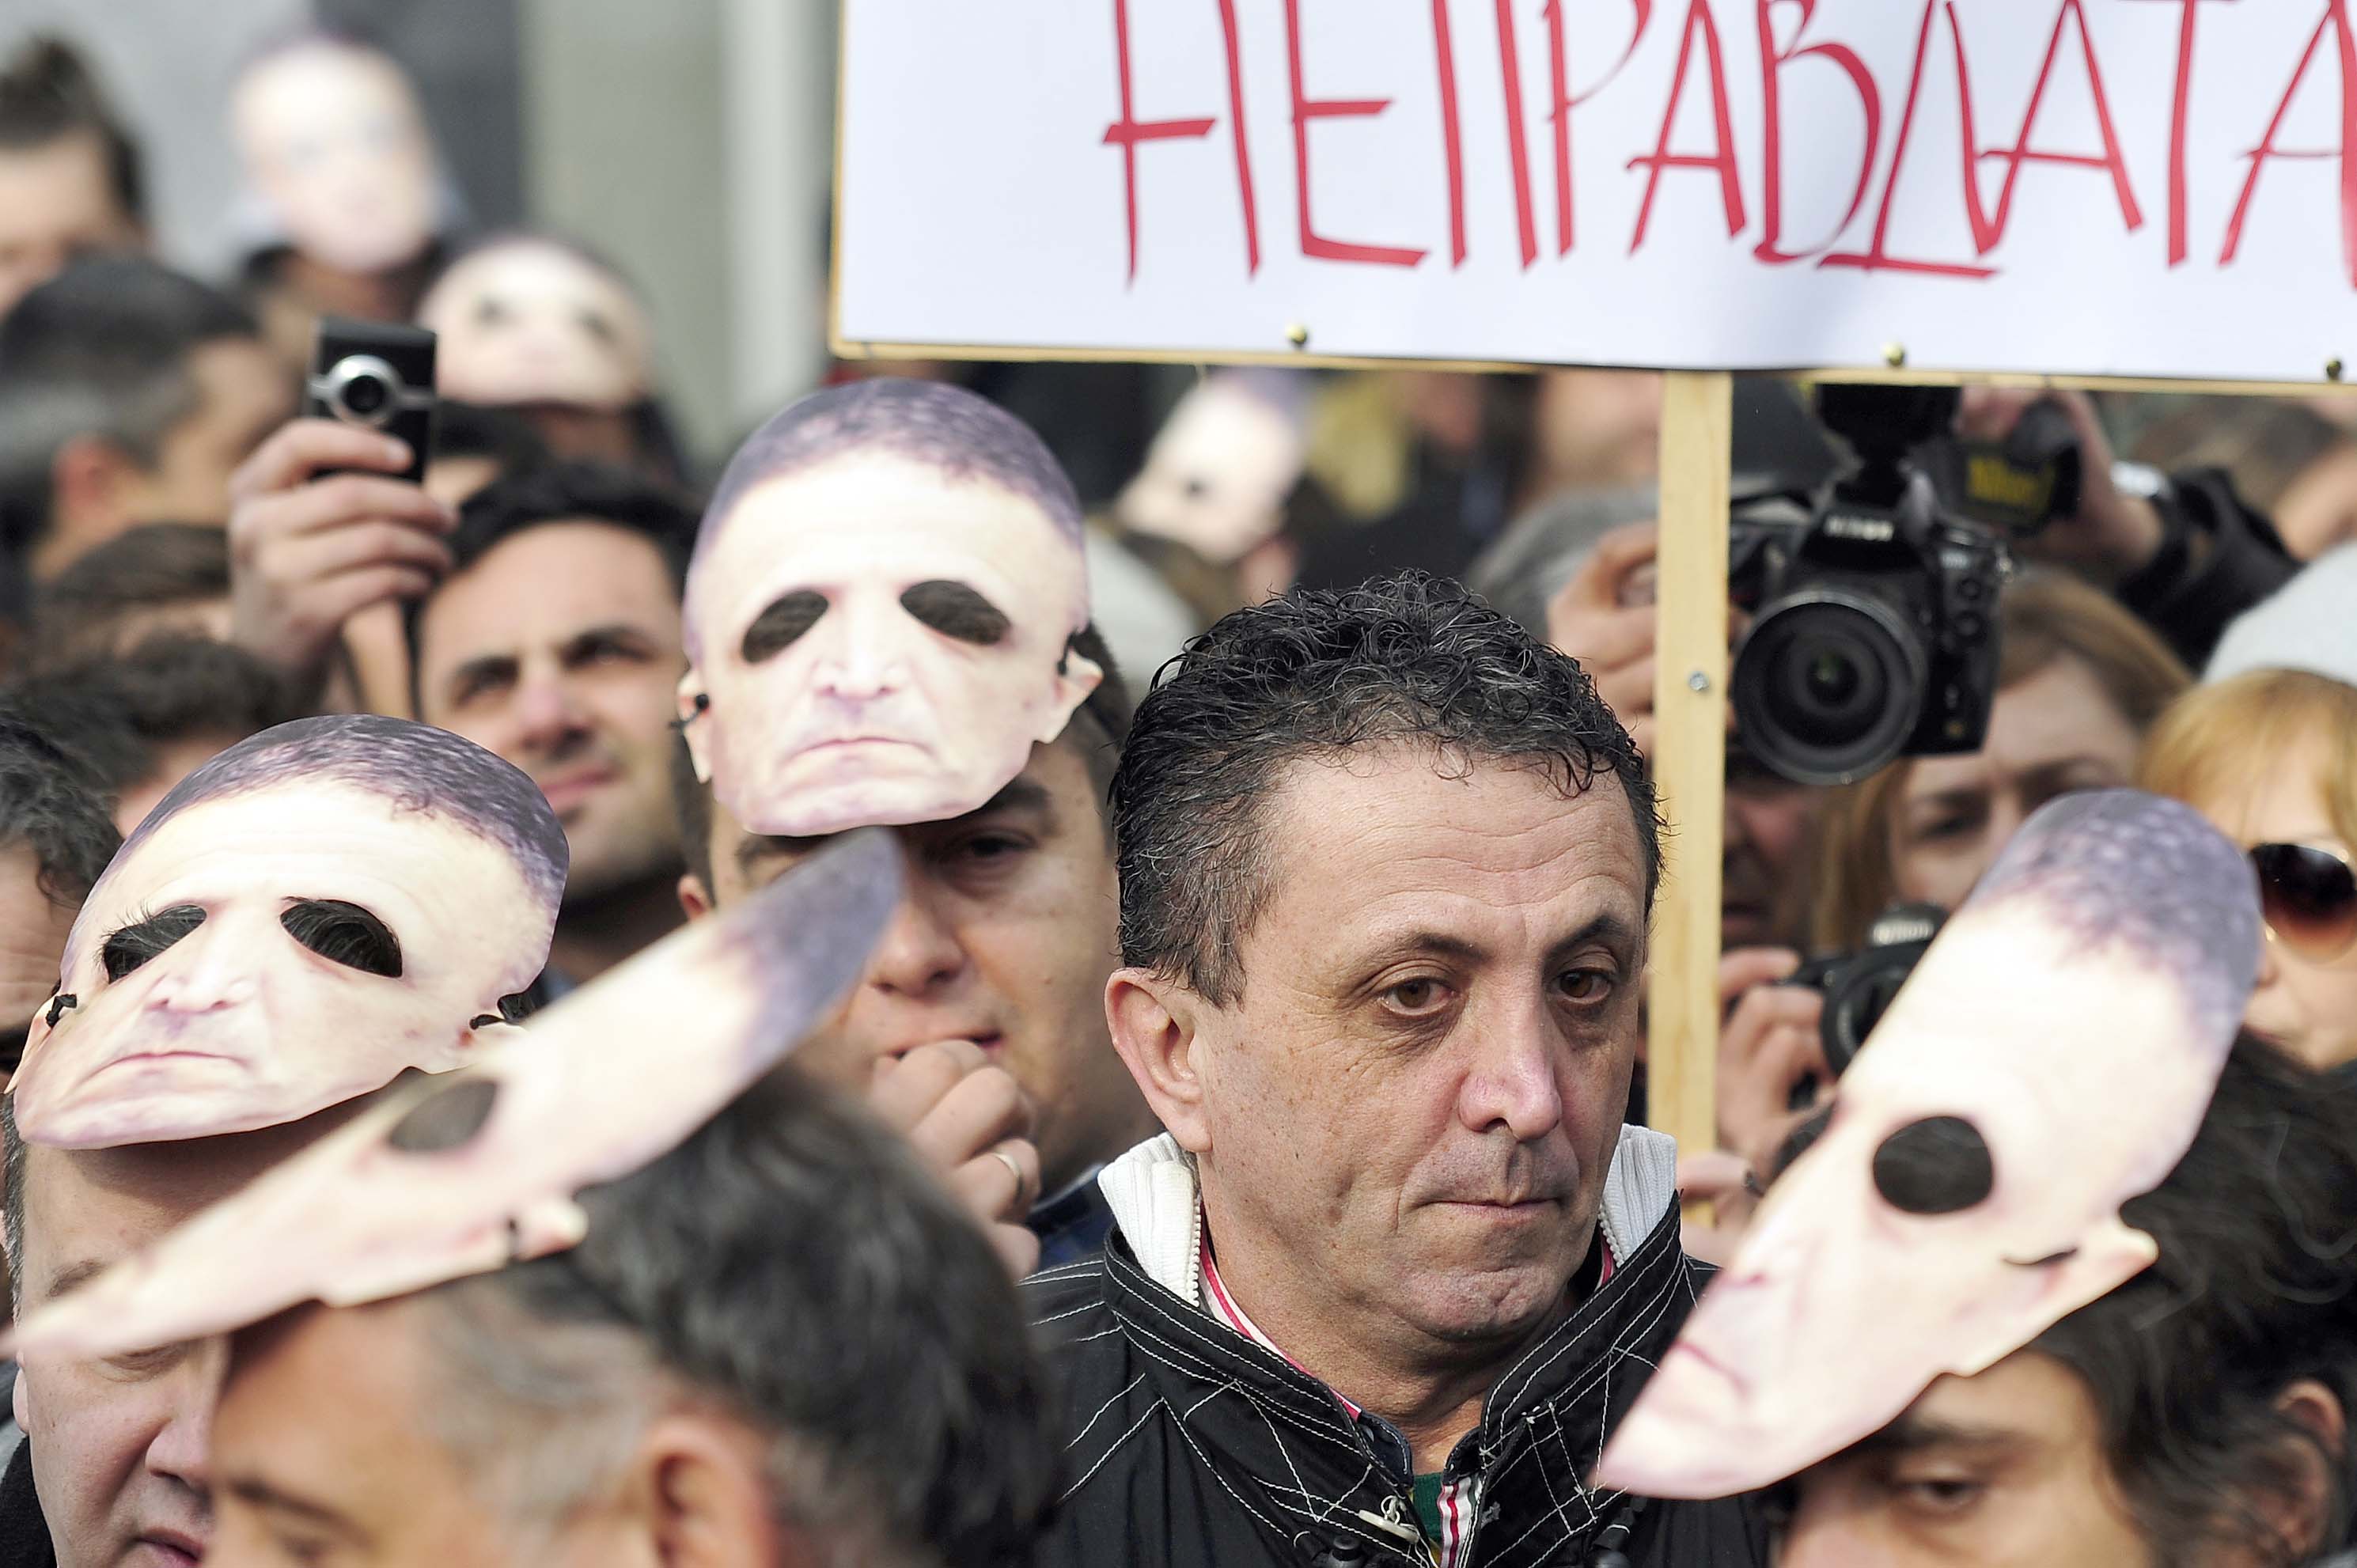 Der regierungskritische Journalist in Begleitung von rund 2000 Demonstranten vor dem Berufungsgericht in Skopje am 20. Januar 2015.